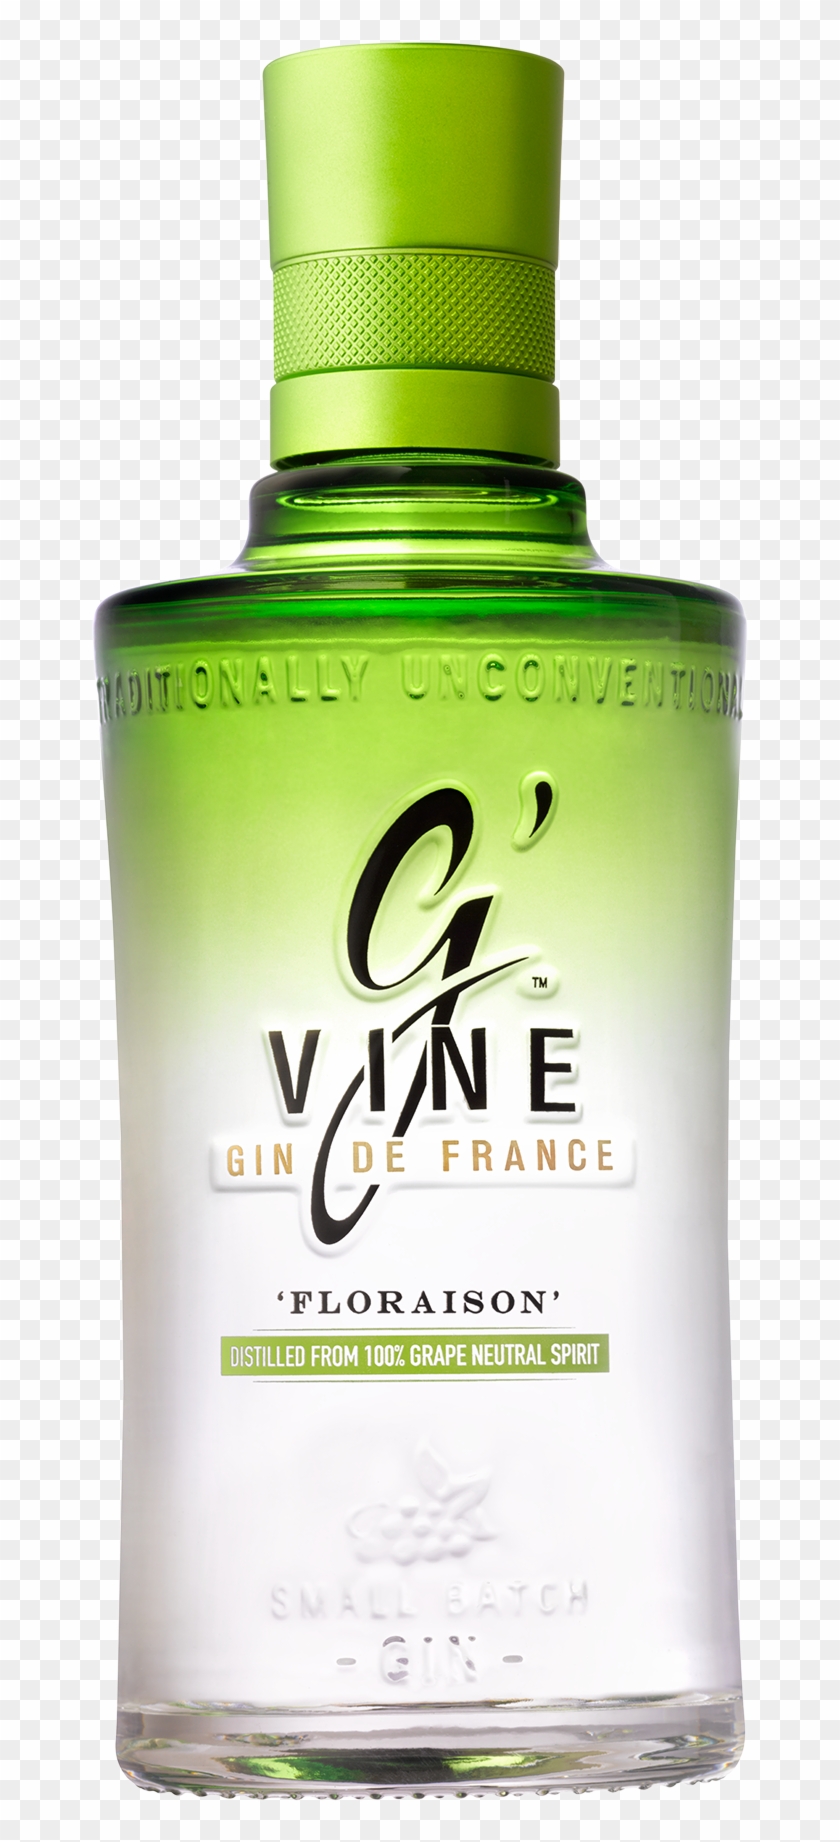 Bottle-floraison - Gvine Gin De France Clipart #2334679